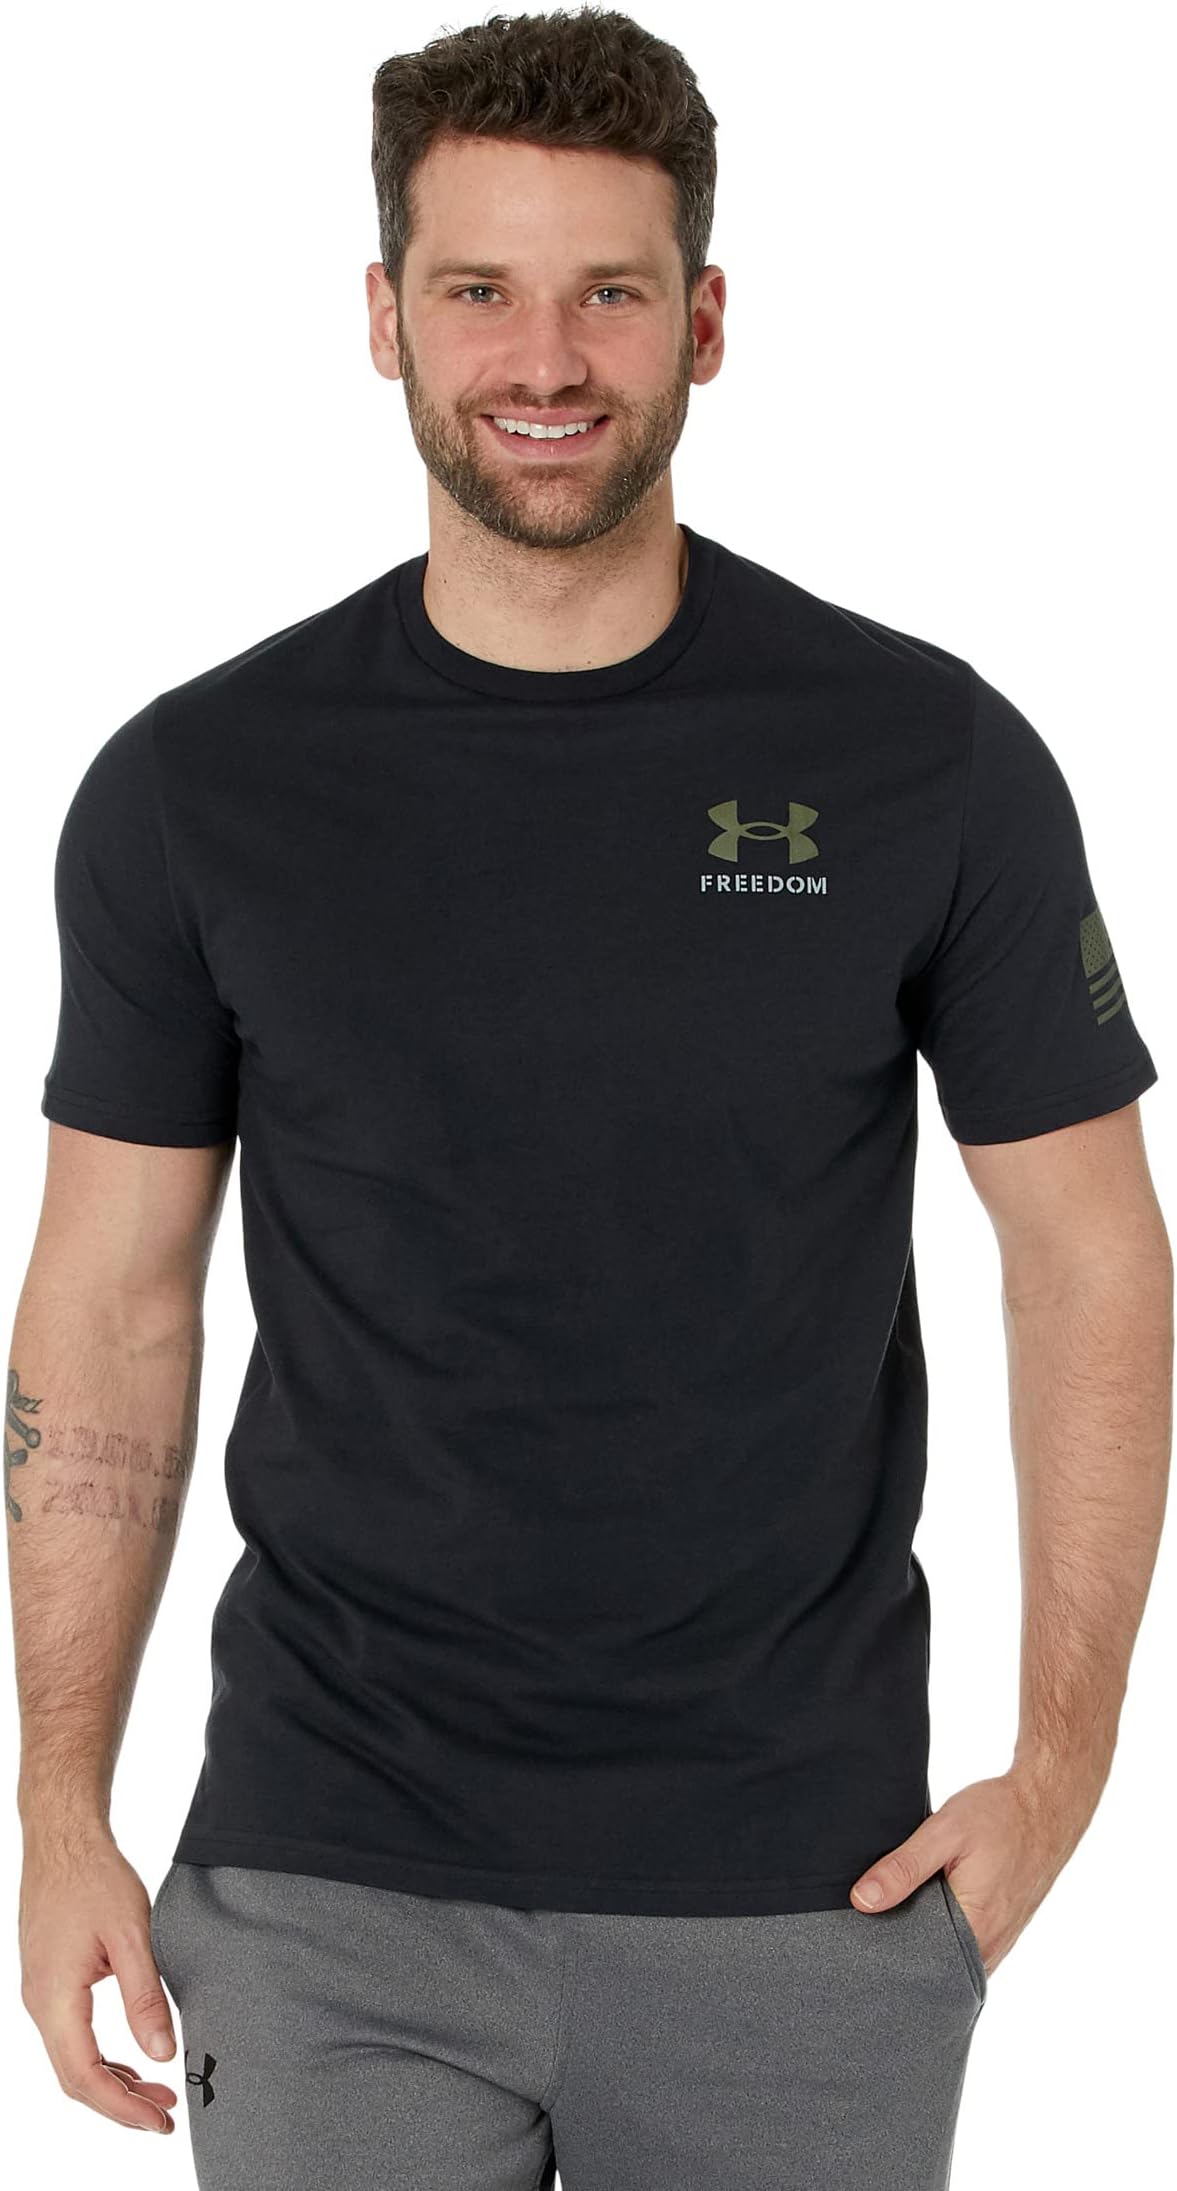 цена Новая футболка со знаменем свободы Under Armour, цвет Black/Steel